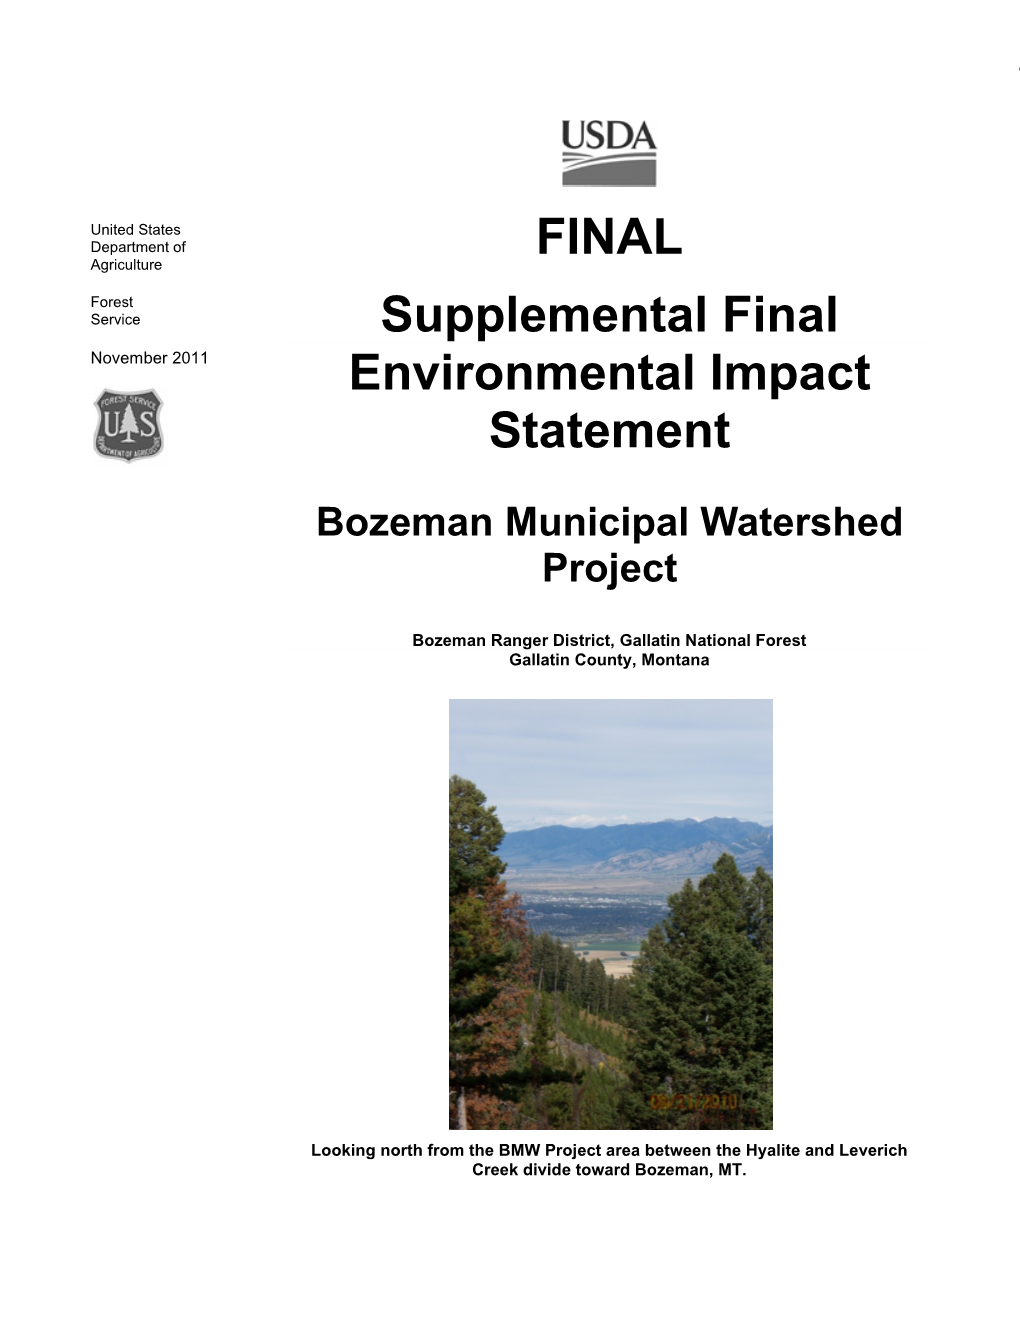 FINAL Supplemental Final Environmental Impact Statement